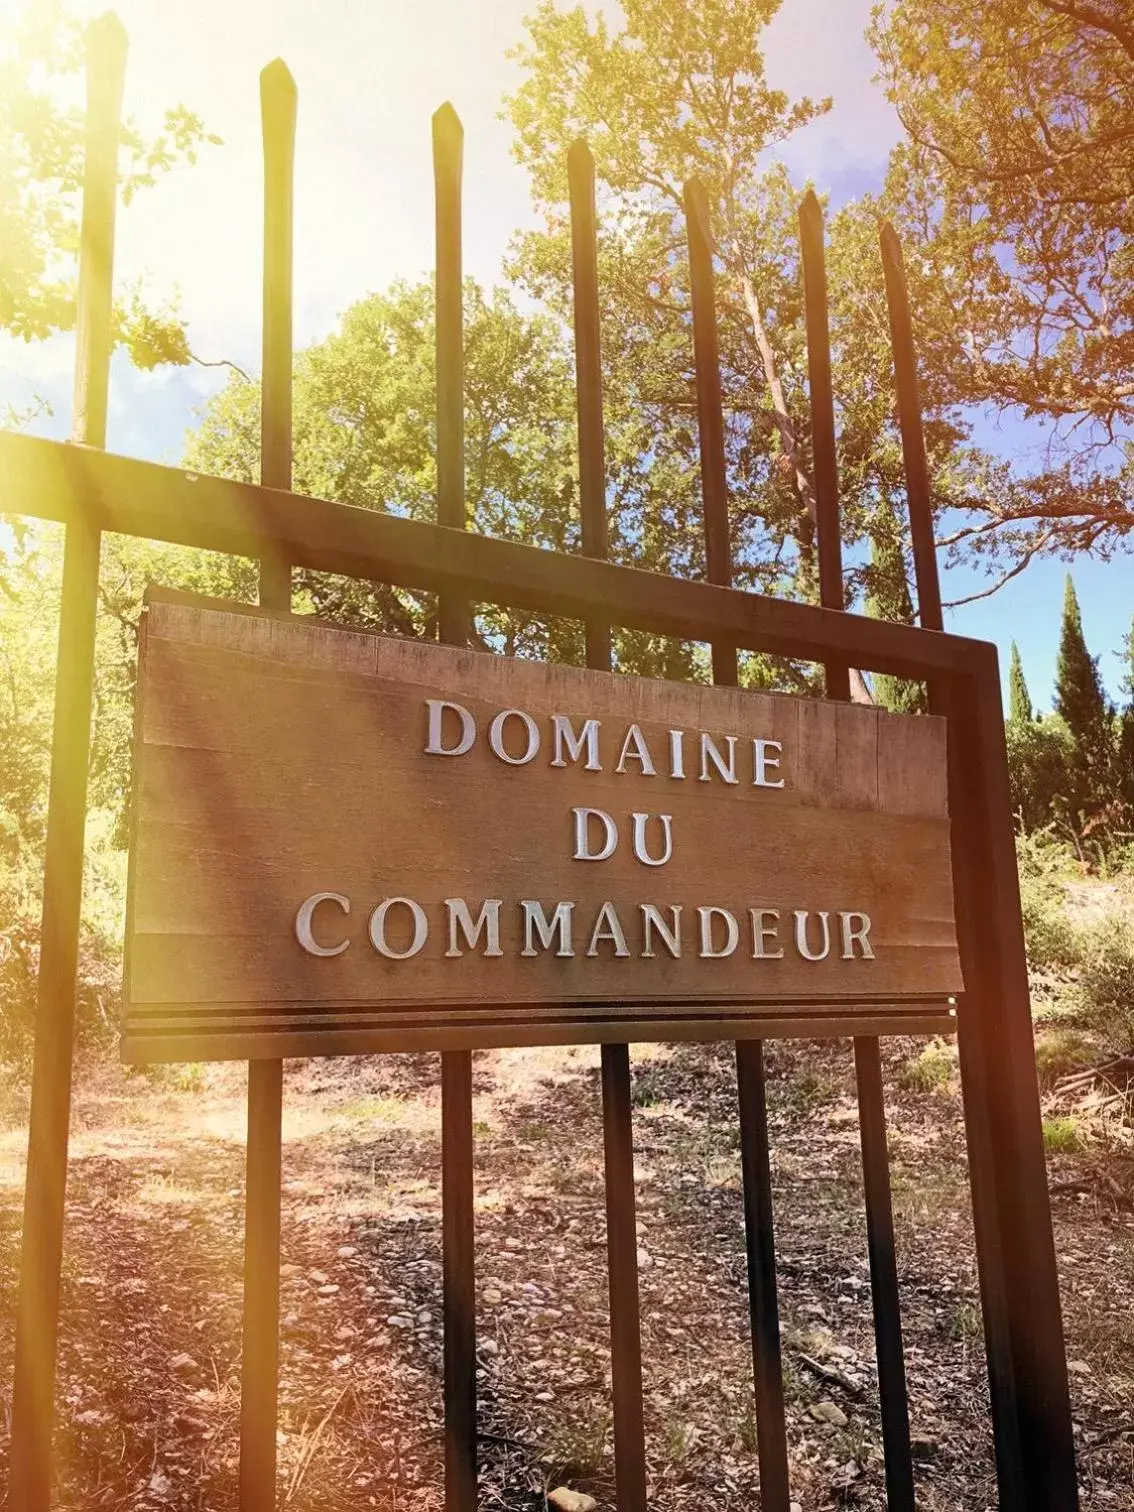 Facade/entrance in Domaine du Commandeur